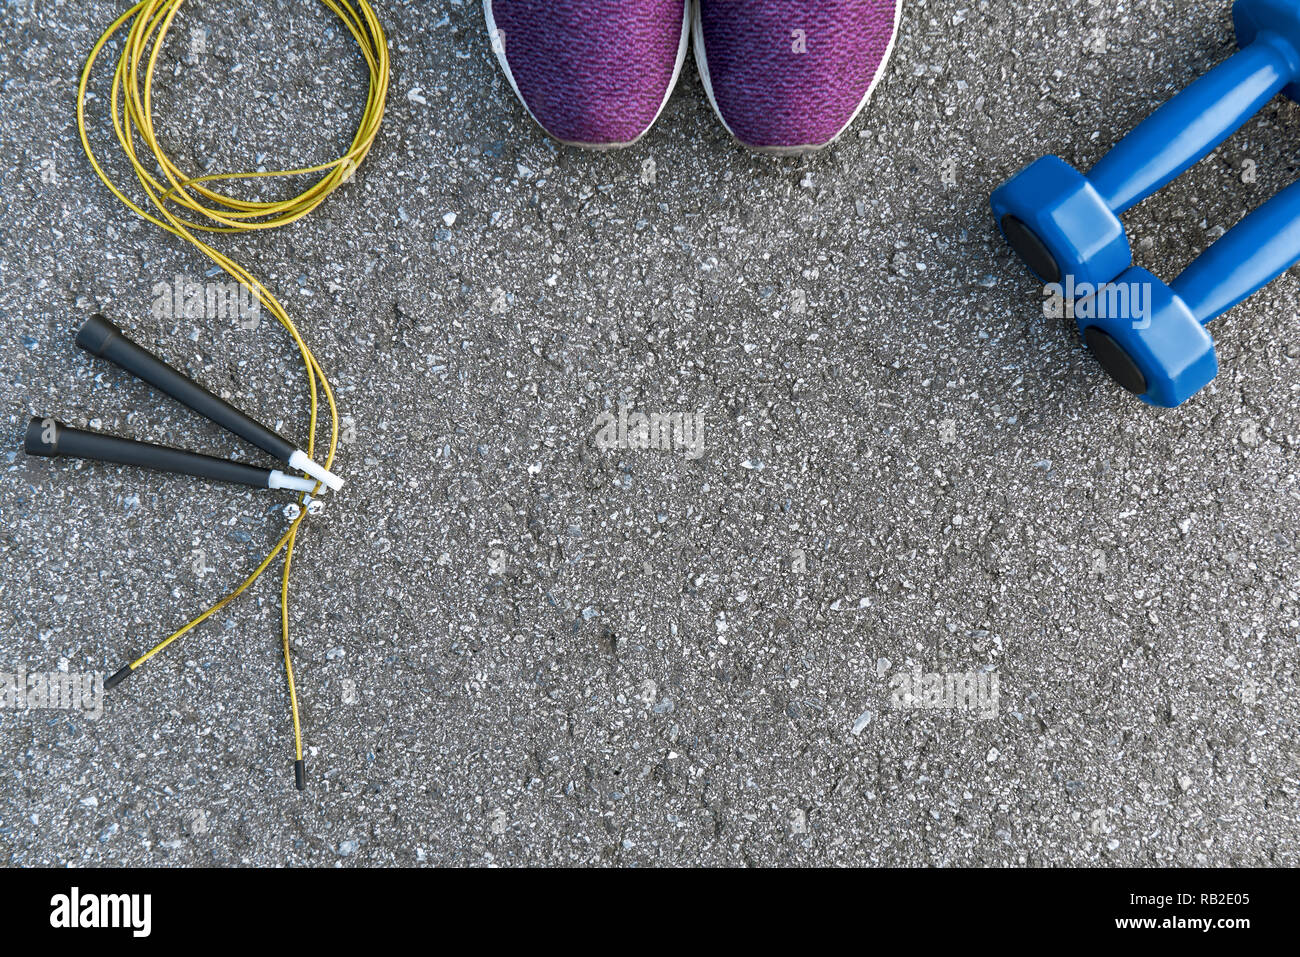 Motiviert zum Training. Zwei blaue dumpbells und Seil springen liegen in der Nähe von Purple Sport Schuhe. Fitness als Hobby Stockfoto